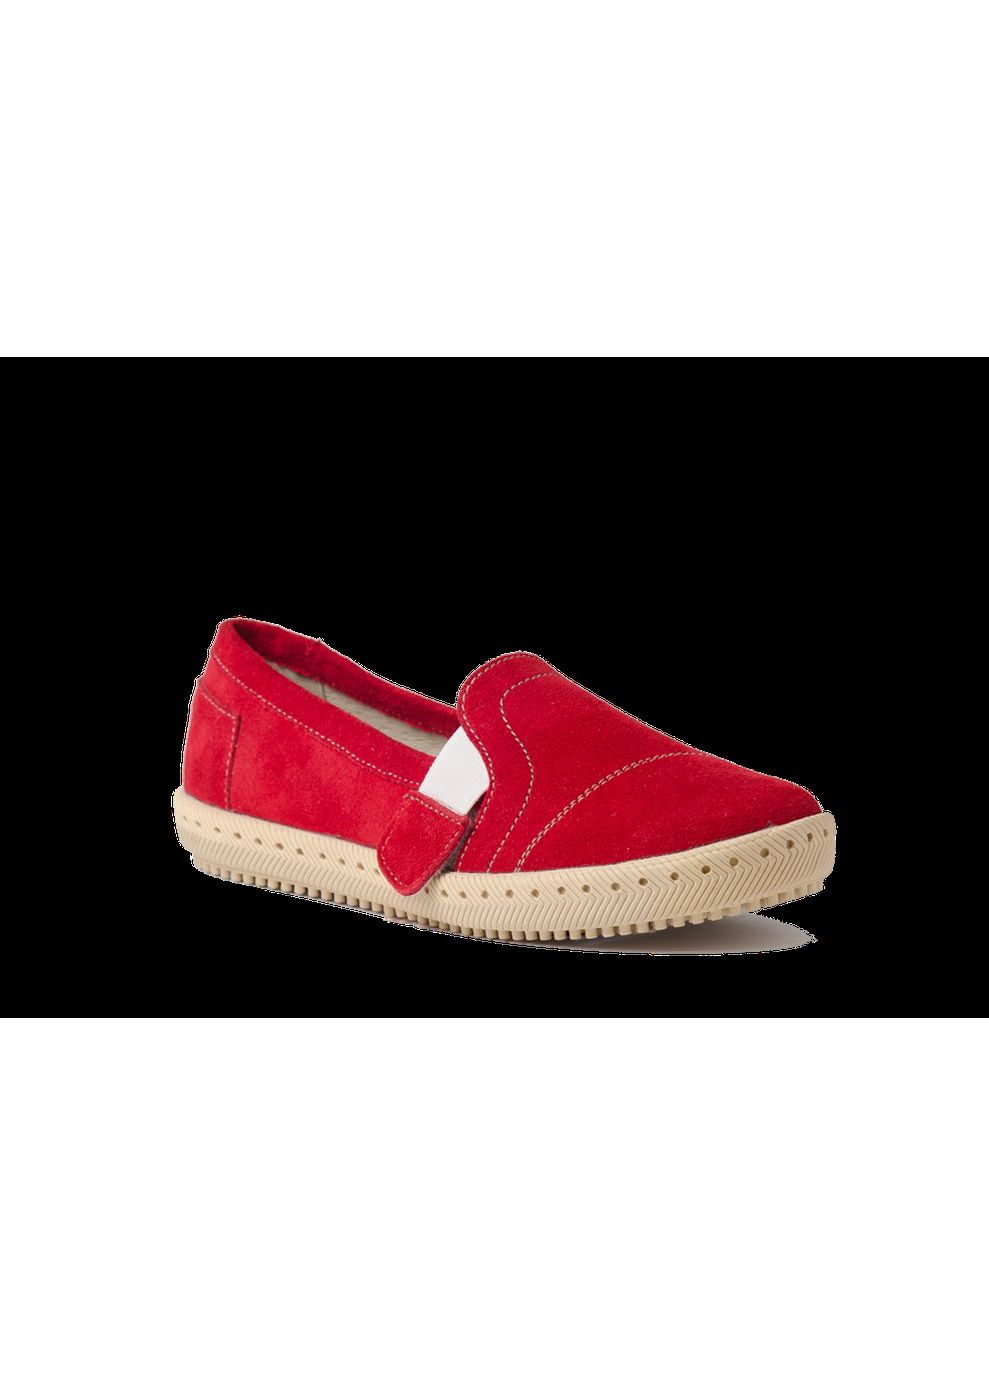 Красные слипоны april rosso тм (украина) Eleven Shoes